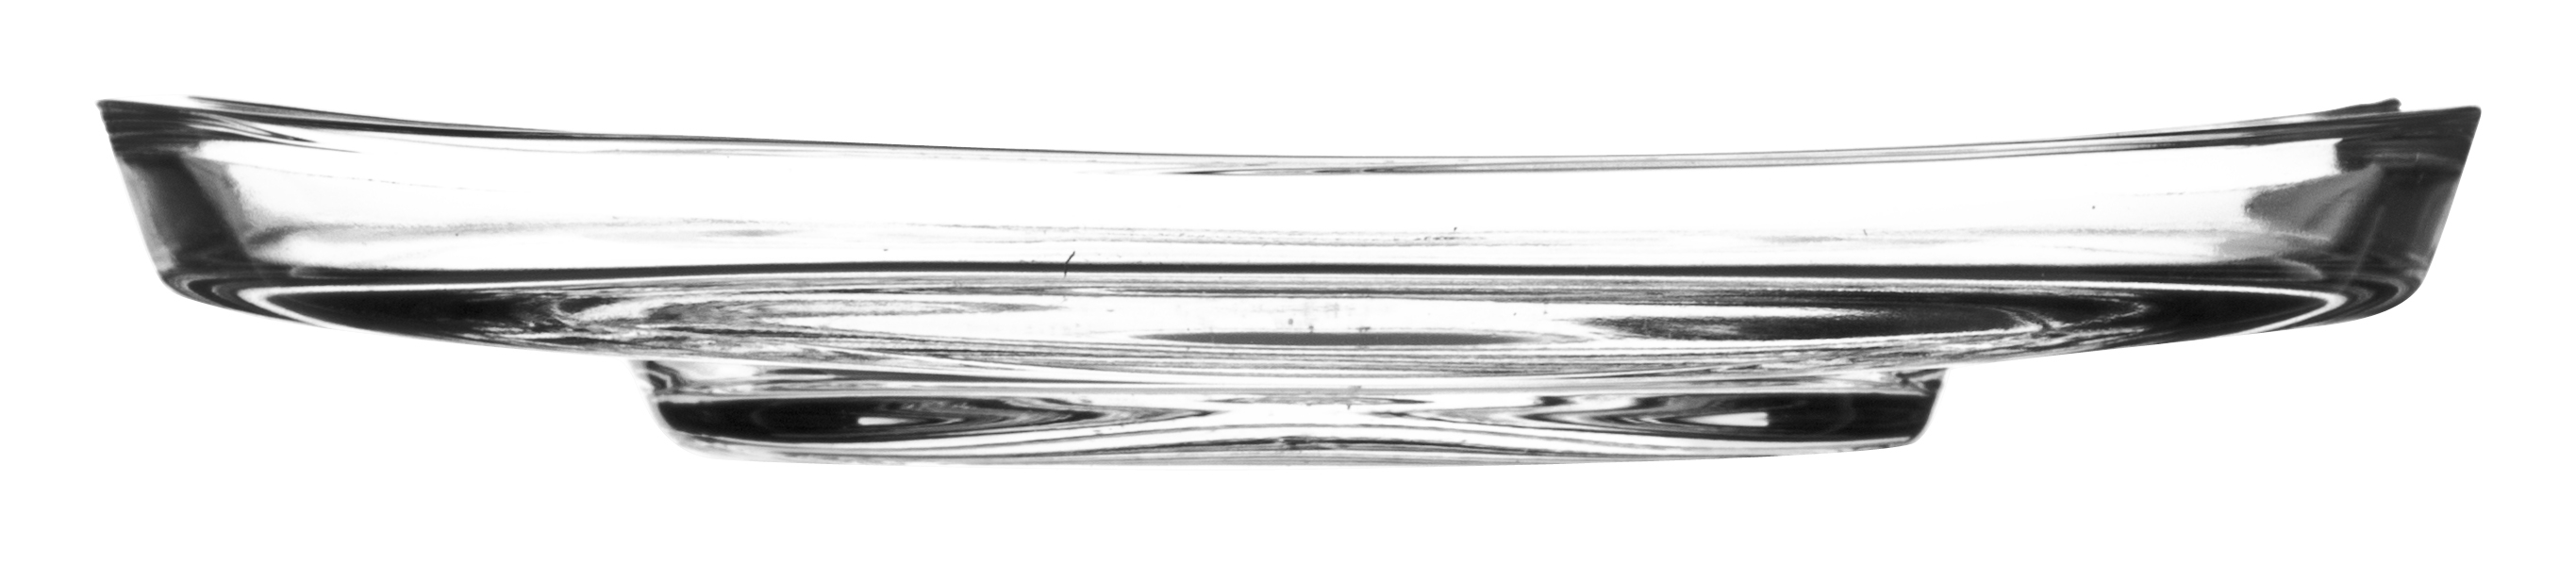 Untertasse Loop, Leonardo - 14cm (6 Stk.)